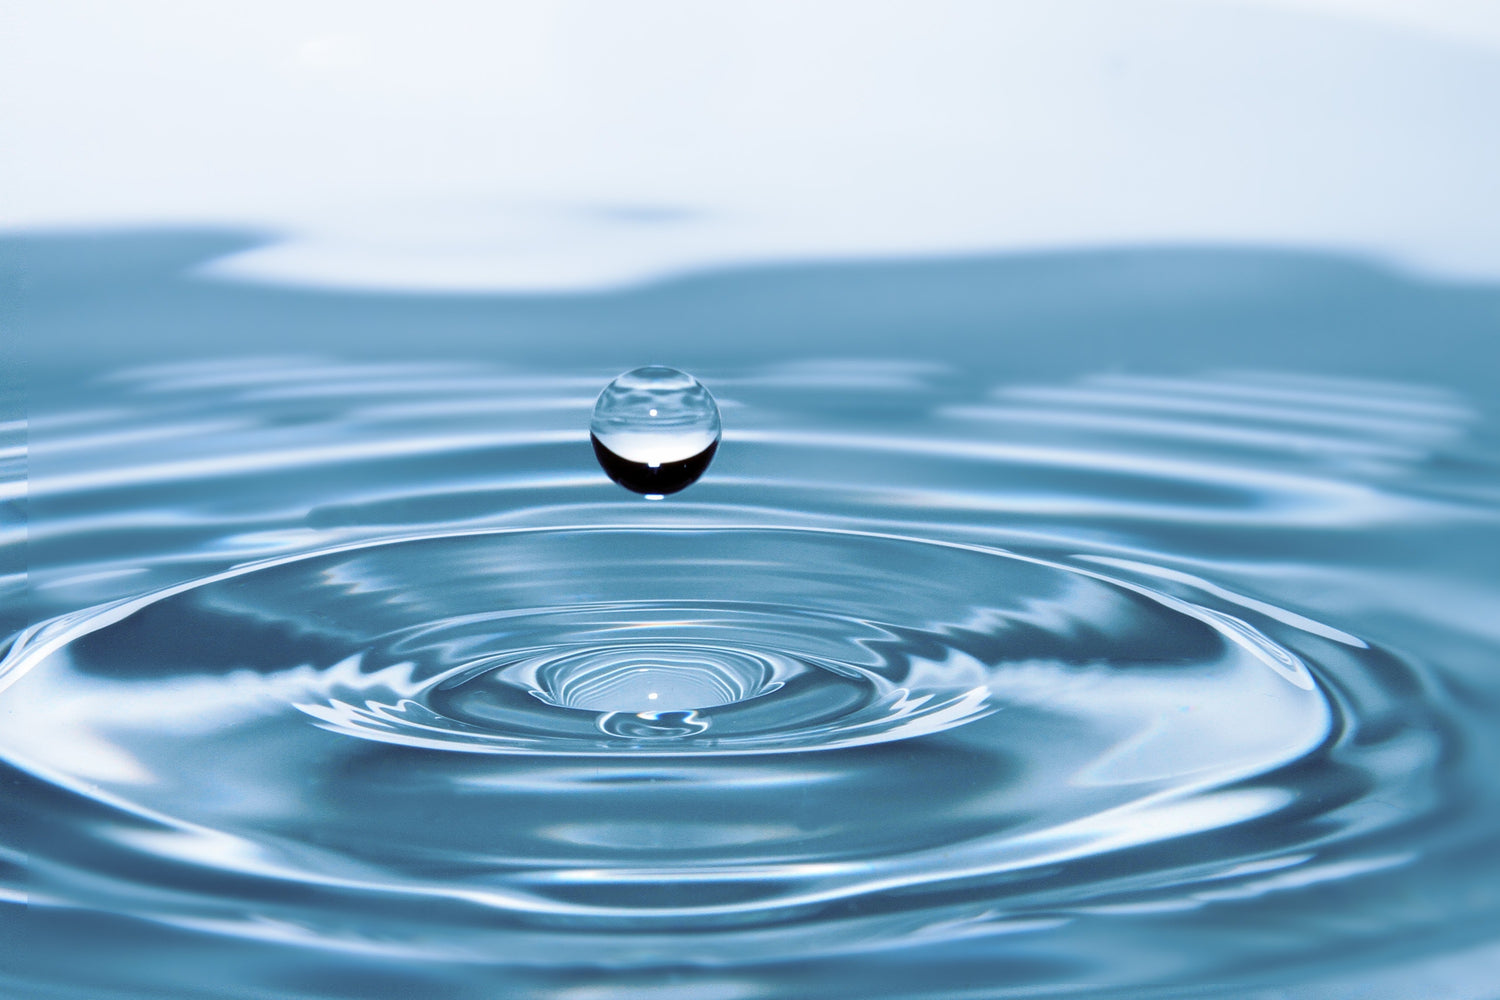 Slika kapljice vode. Predstavlja slučajeve upotrebe Helium vezano uz kvalitetu zraka i vode.